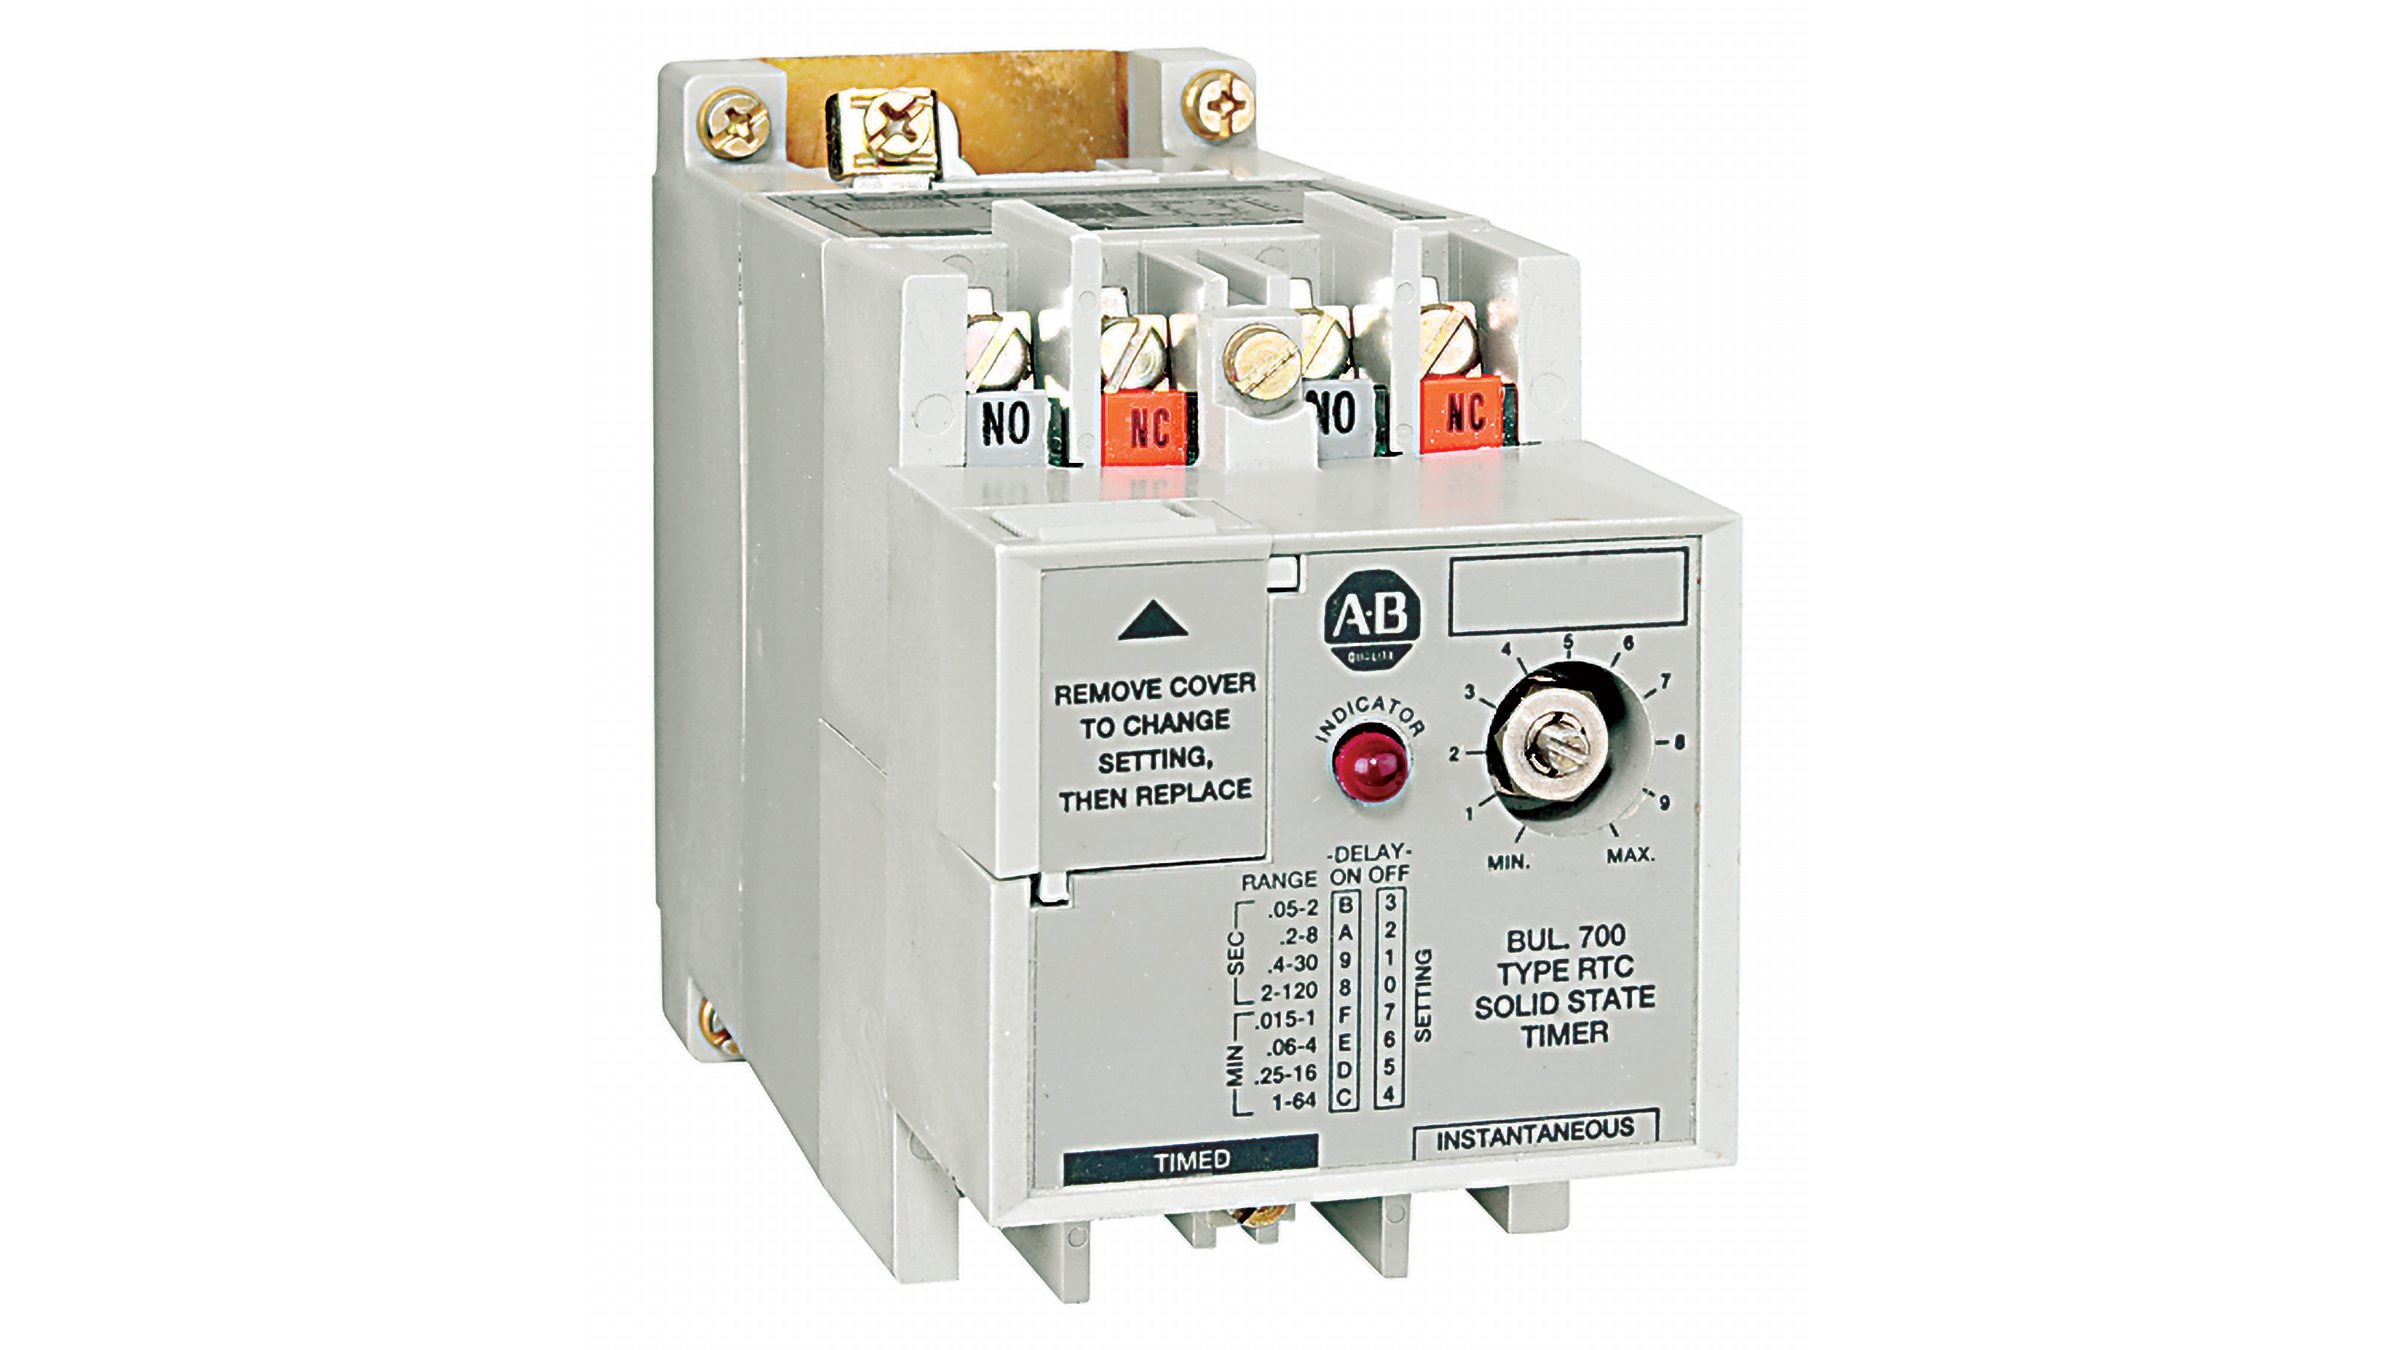 Allen-Bradley 型號 700-RTC 固態計時繼電器是固定式計時繼電器，設計用於需要特定時間延遲的應用，其中必須避免無意的時間變化。